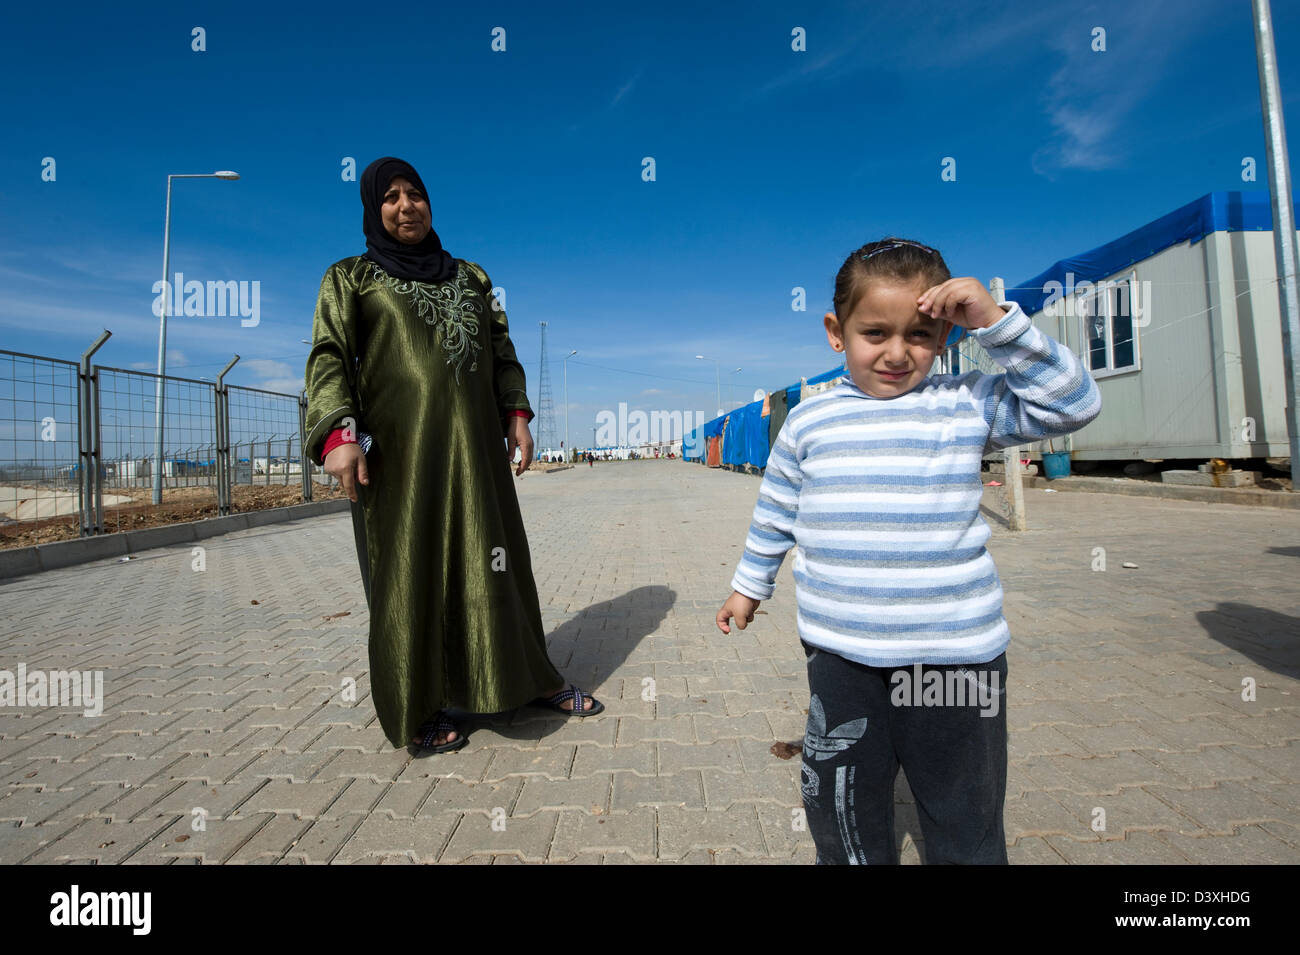 Kilis, Turkey, February 25, 2013: the Kilis refugee camp Stock Photo